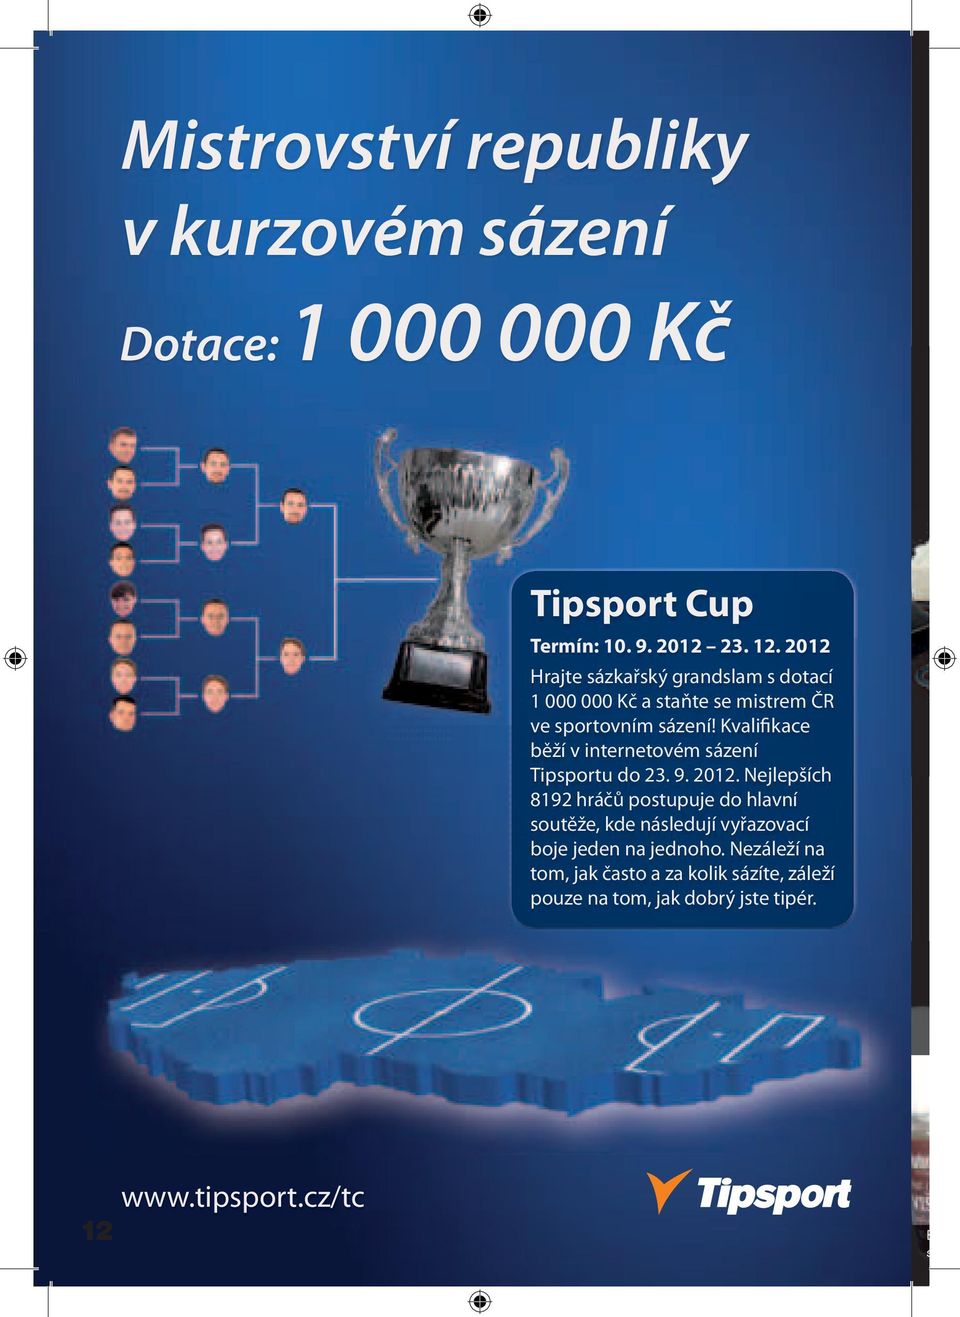 Kvalifikace běží v internetovém sázení Tipsportu do 23. 9. 2012.